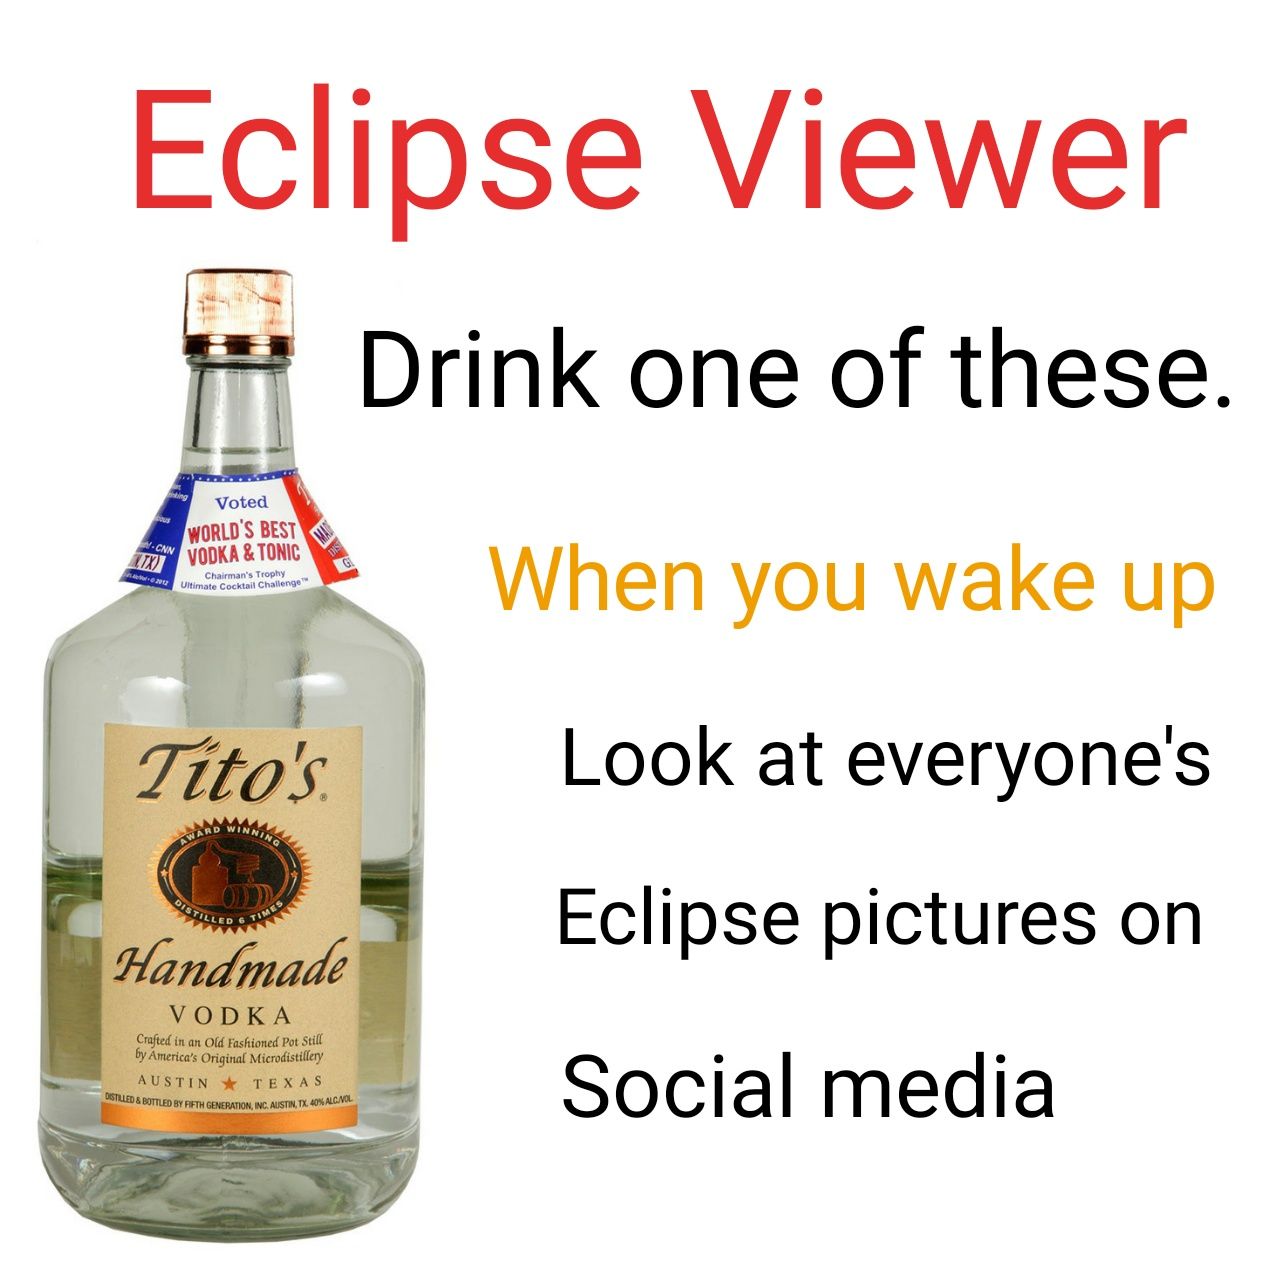 Eclipse viewer